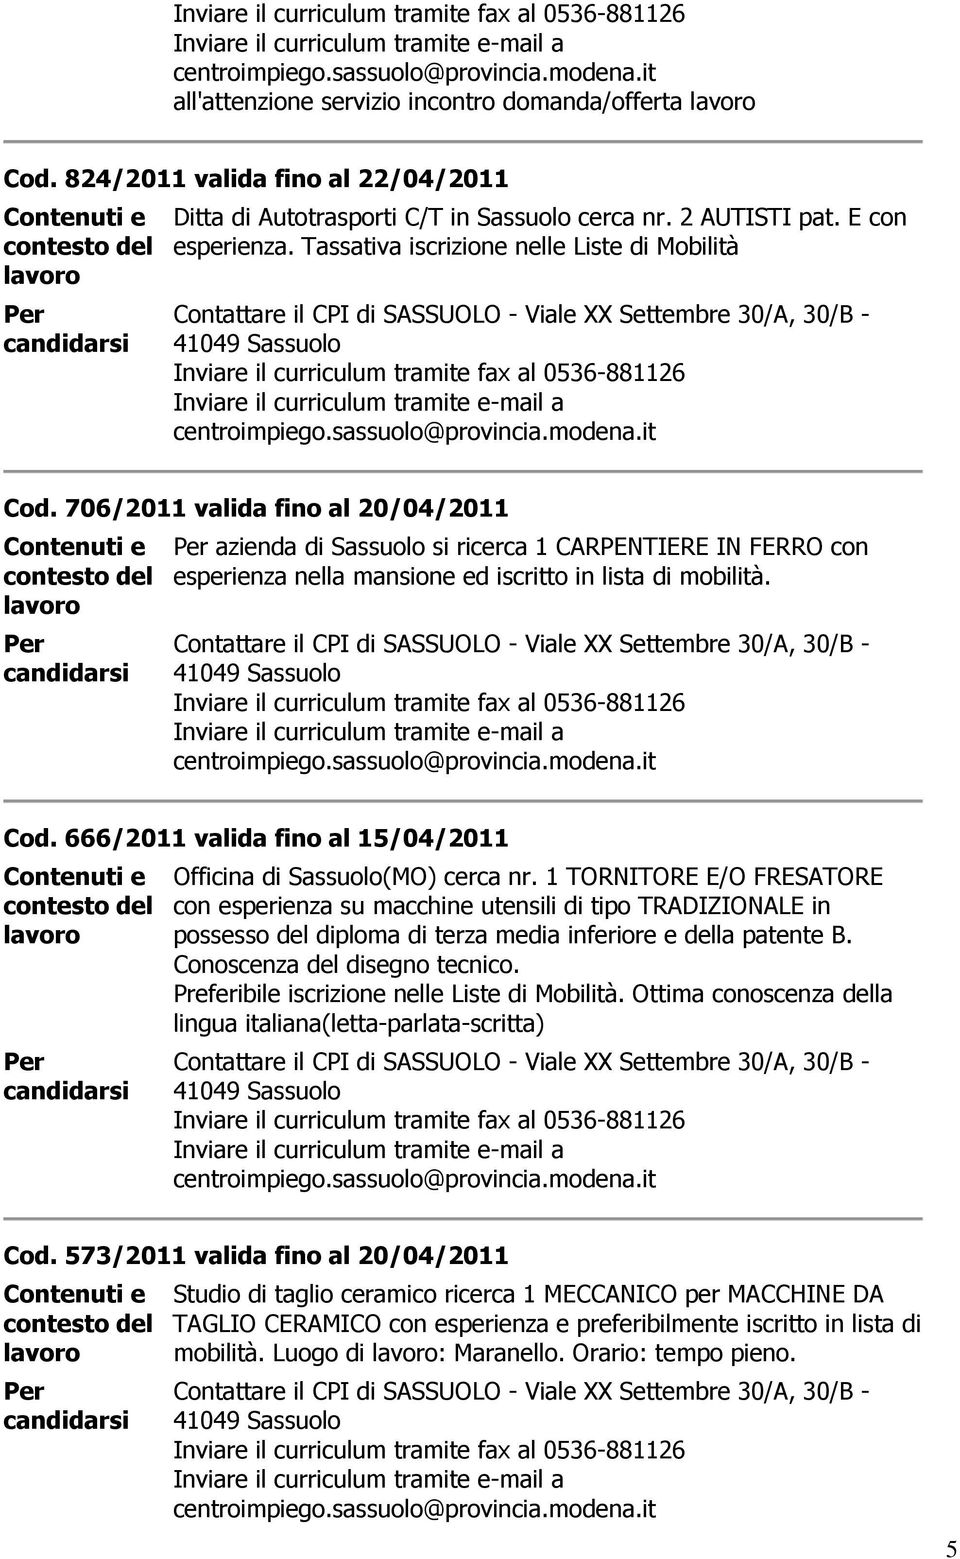 41049 Cod. 666/2011 valida fino al 15/04/2011 Officina di (MO) cerca nr.